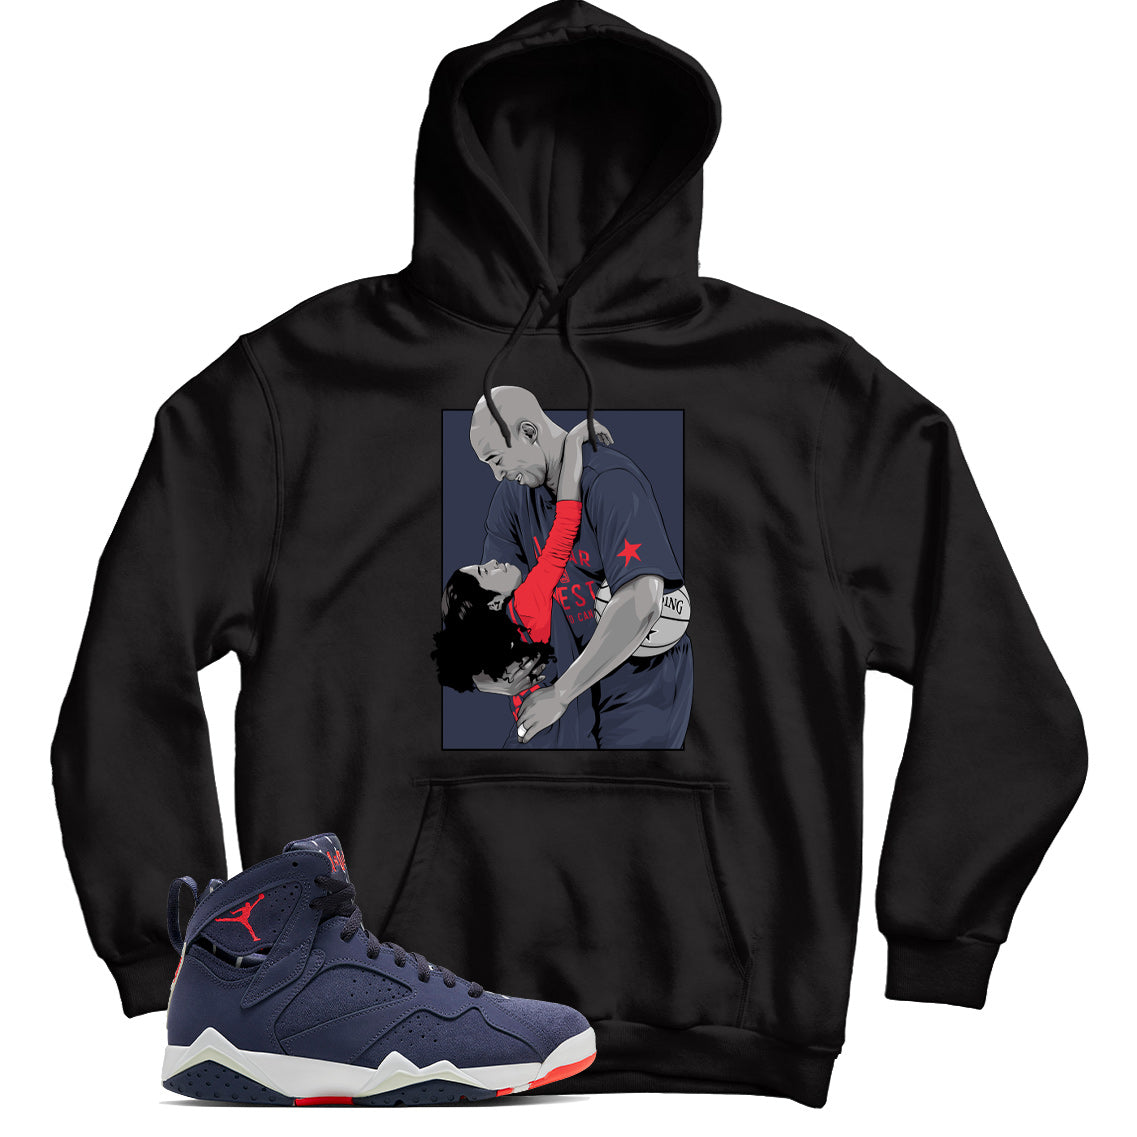 Jordan 7 Quai 54 hoodie